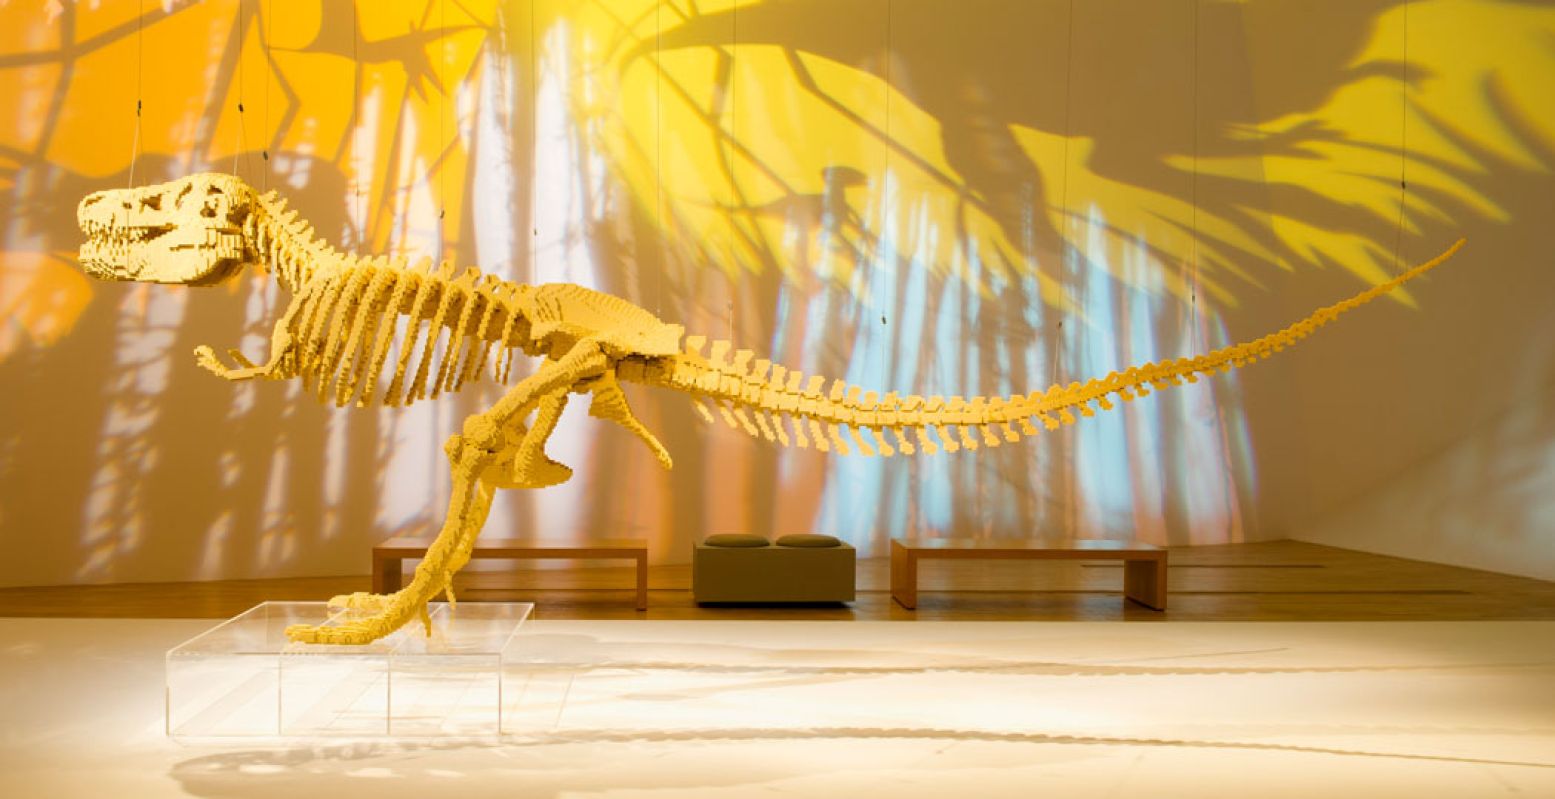 Het gigantische T-rex-skelet, volledig gemaakt van LEGO bestaat uit maar liefst 80.020 steentjes. Foto: The Art of the Brick